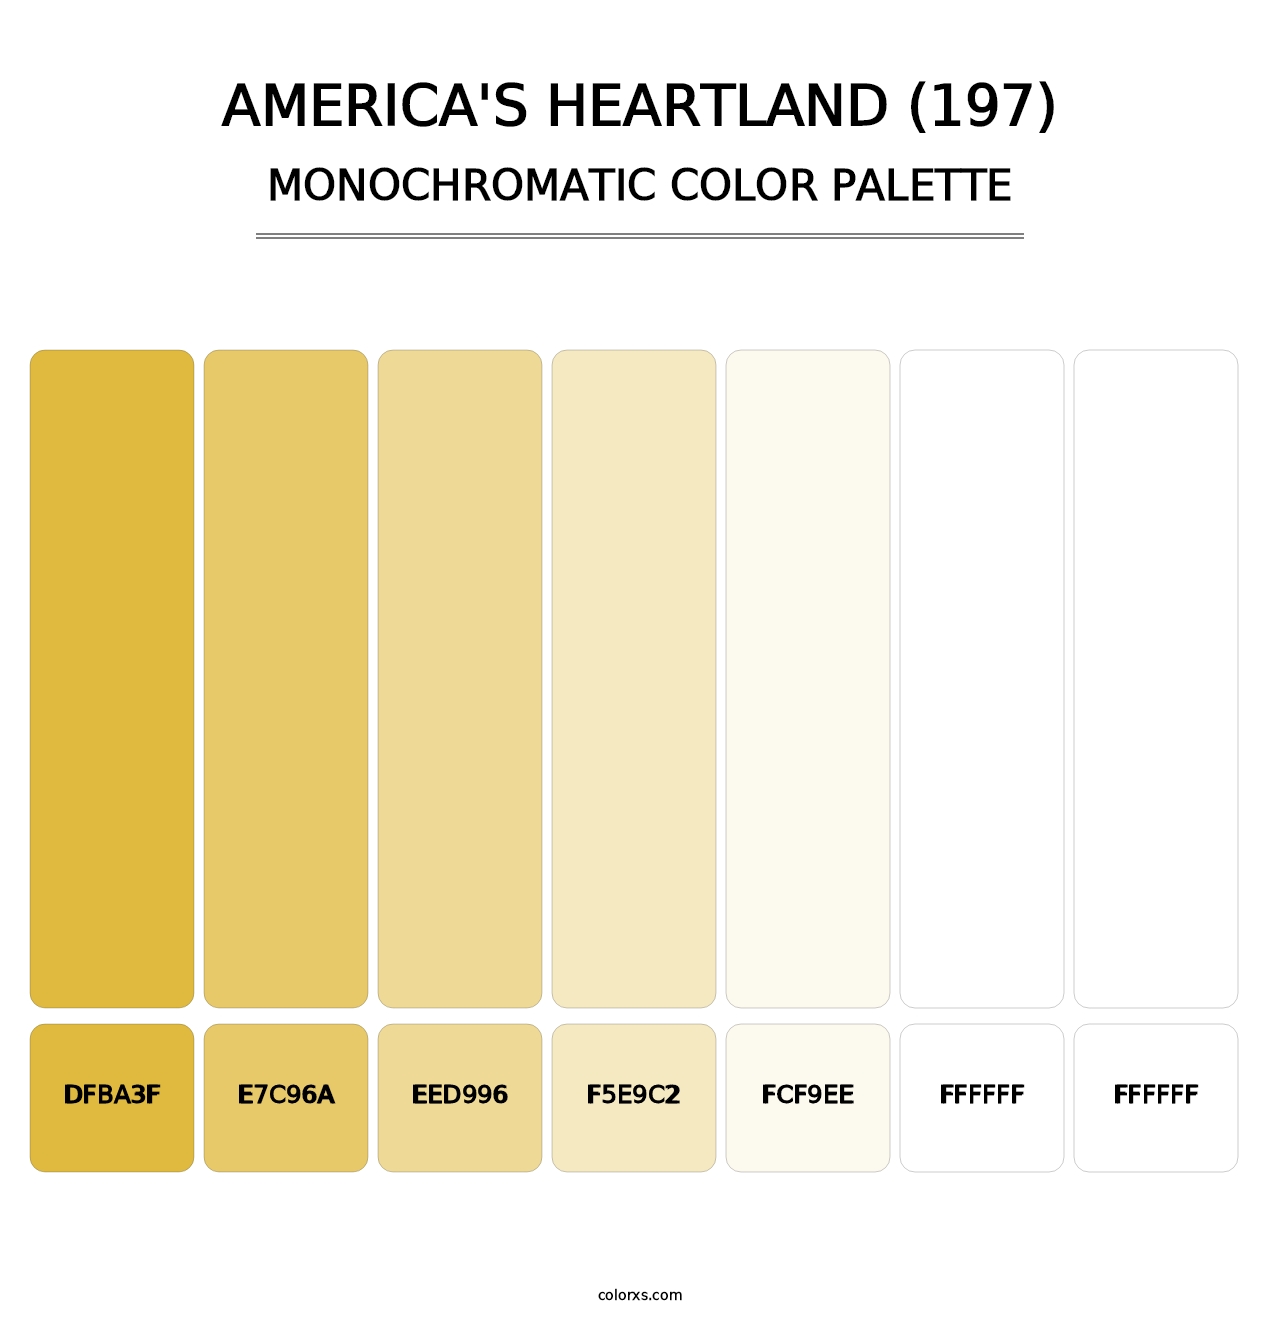 America's Heartland (197) - Monochromatic Color Palette